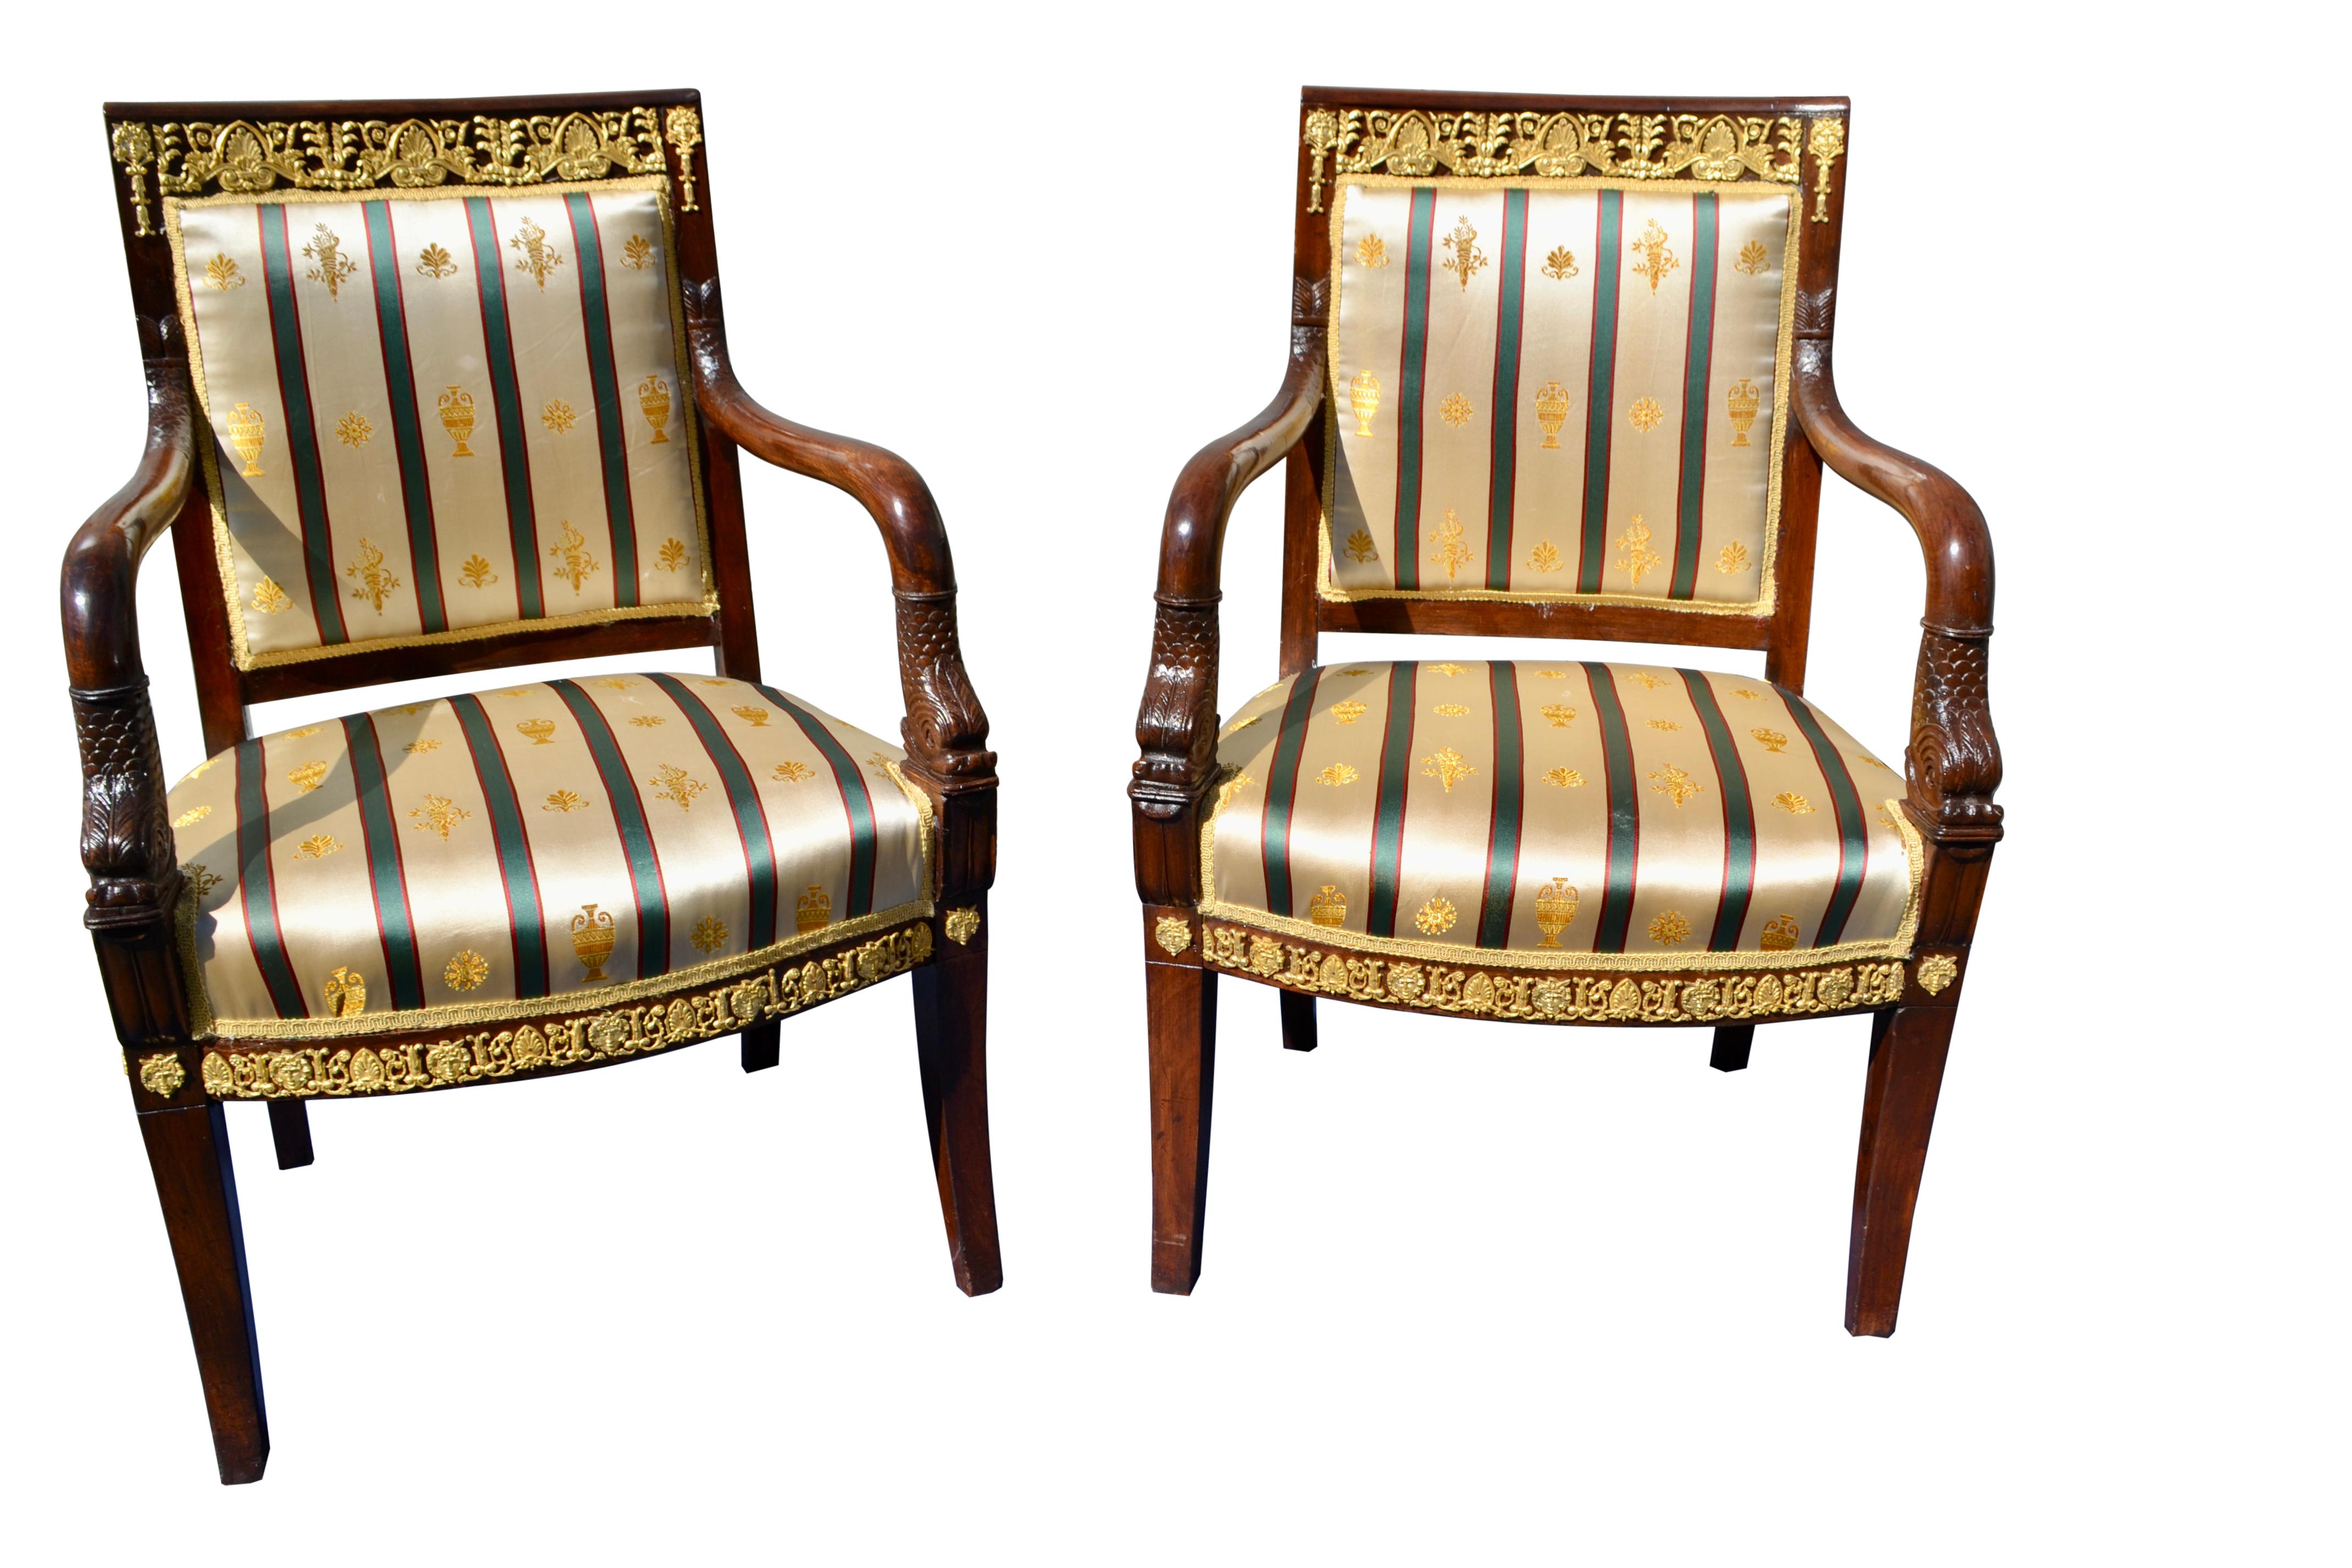 Une paire remarquable de fauteuils en acajou de la fin de l'Empire français, très décorés avec des montures en bronze doré sur le rail supérieur du dossier et tout autour du bas de l'assise. Les accoudoirs courbes et ouverts se terminent par des